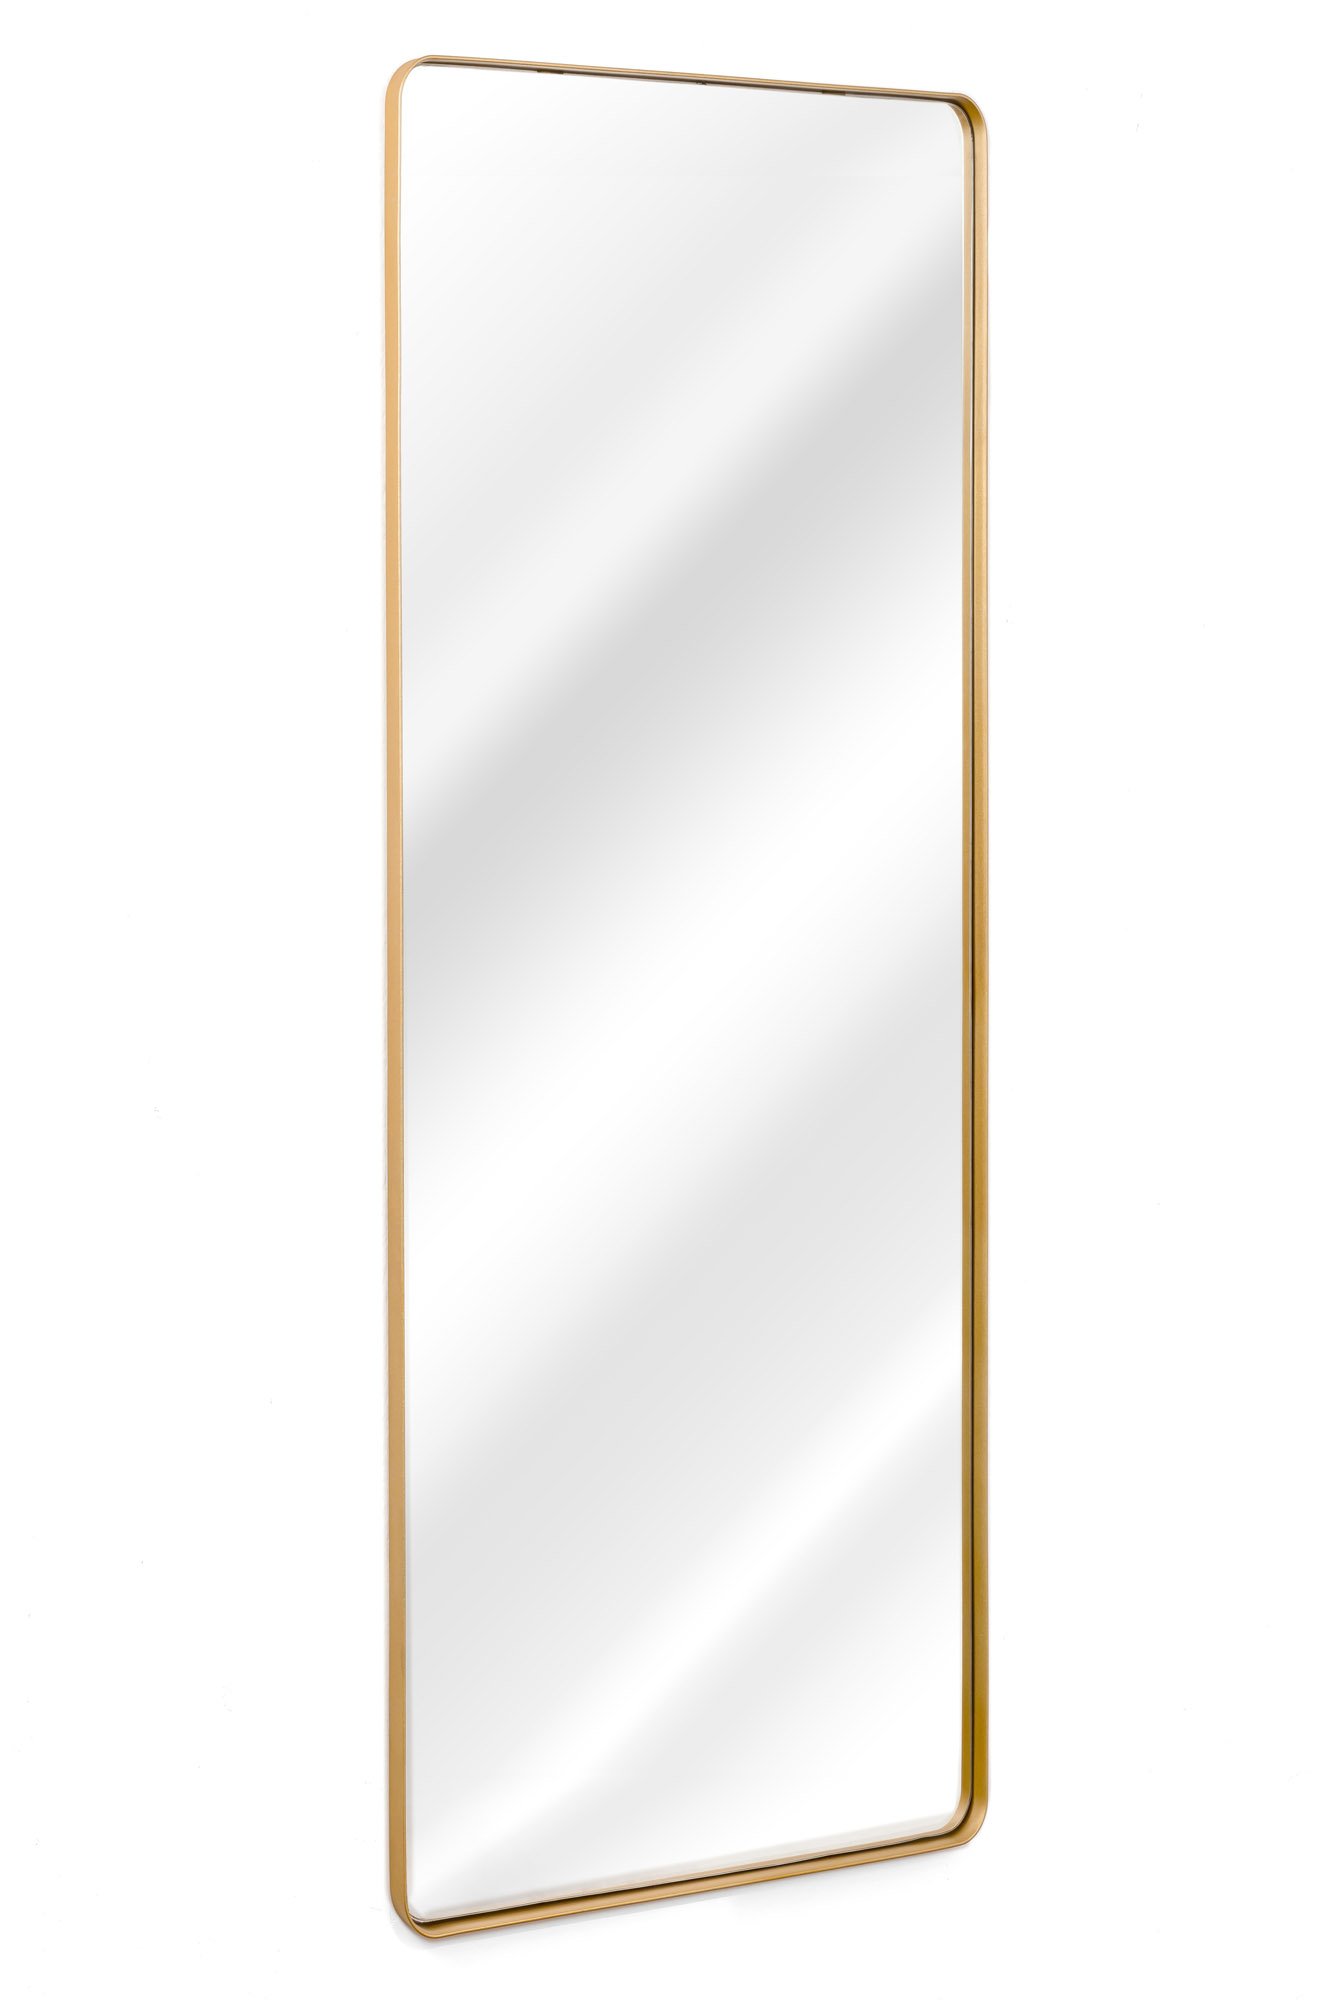 Espelho Retangular Com Moldura Em Metal 170 x 70 Cm - Cores - Dourado